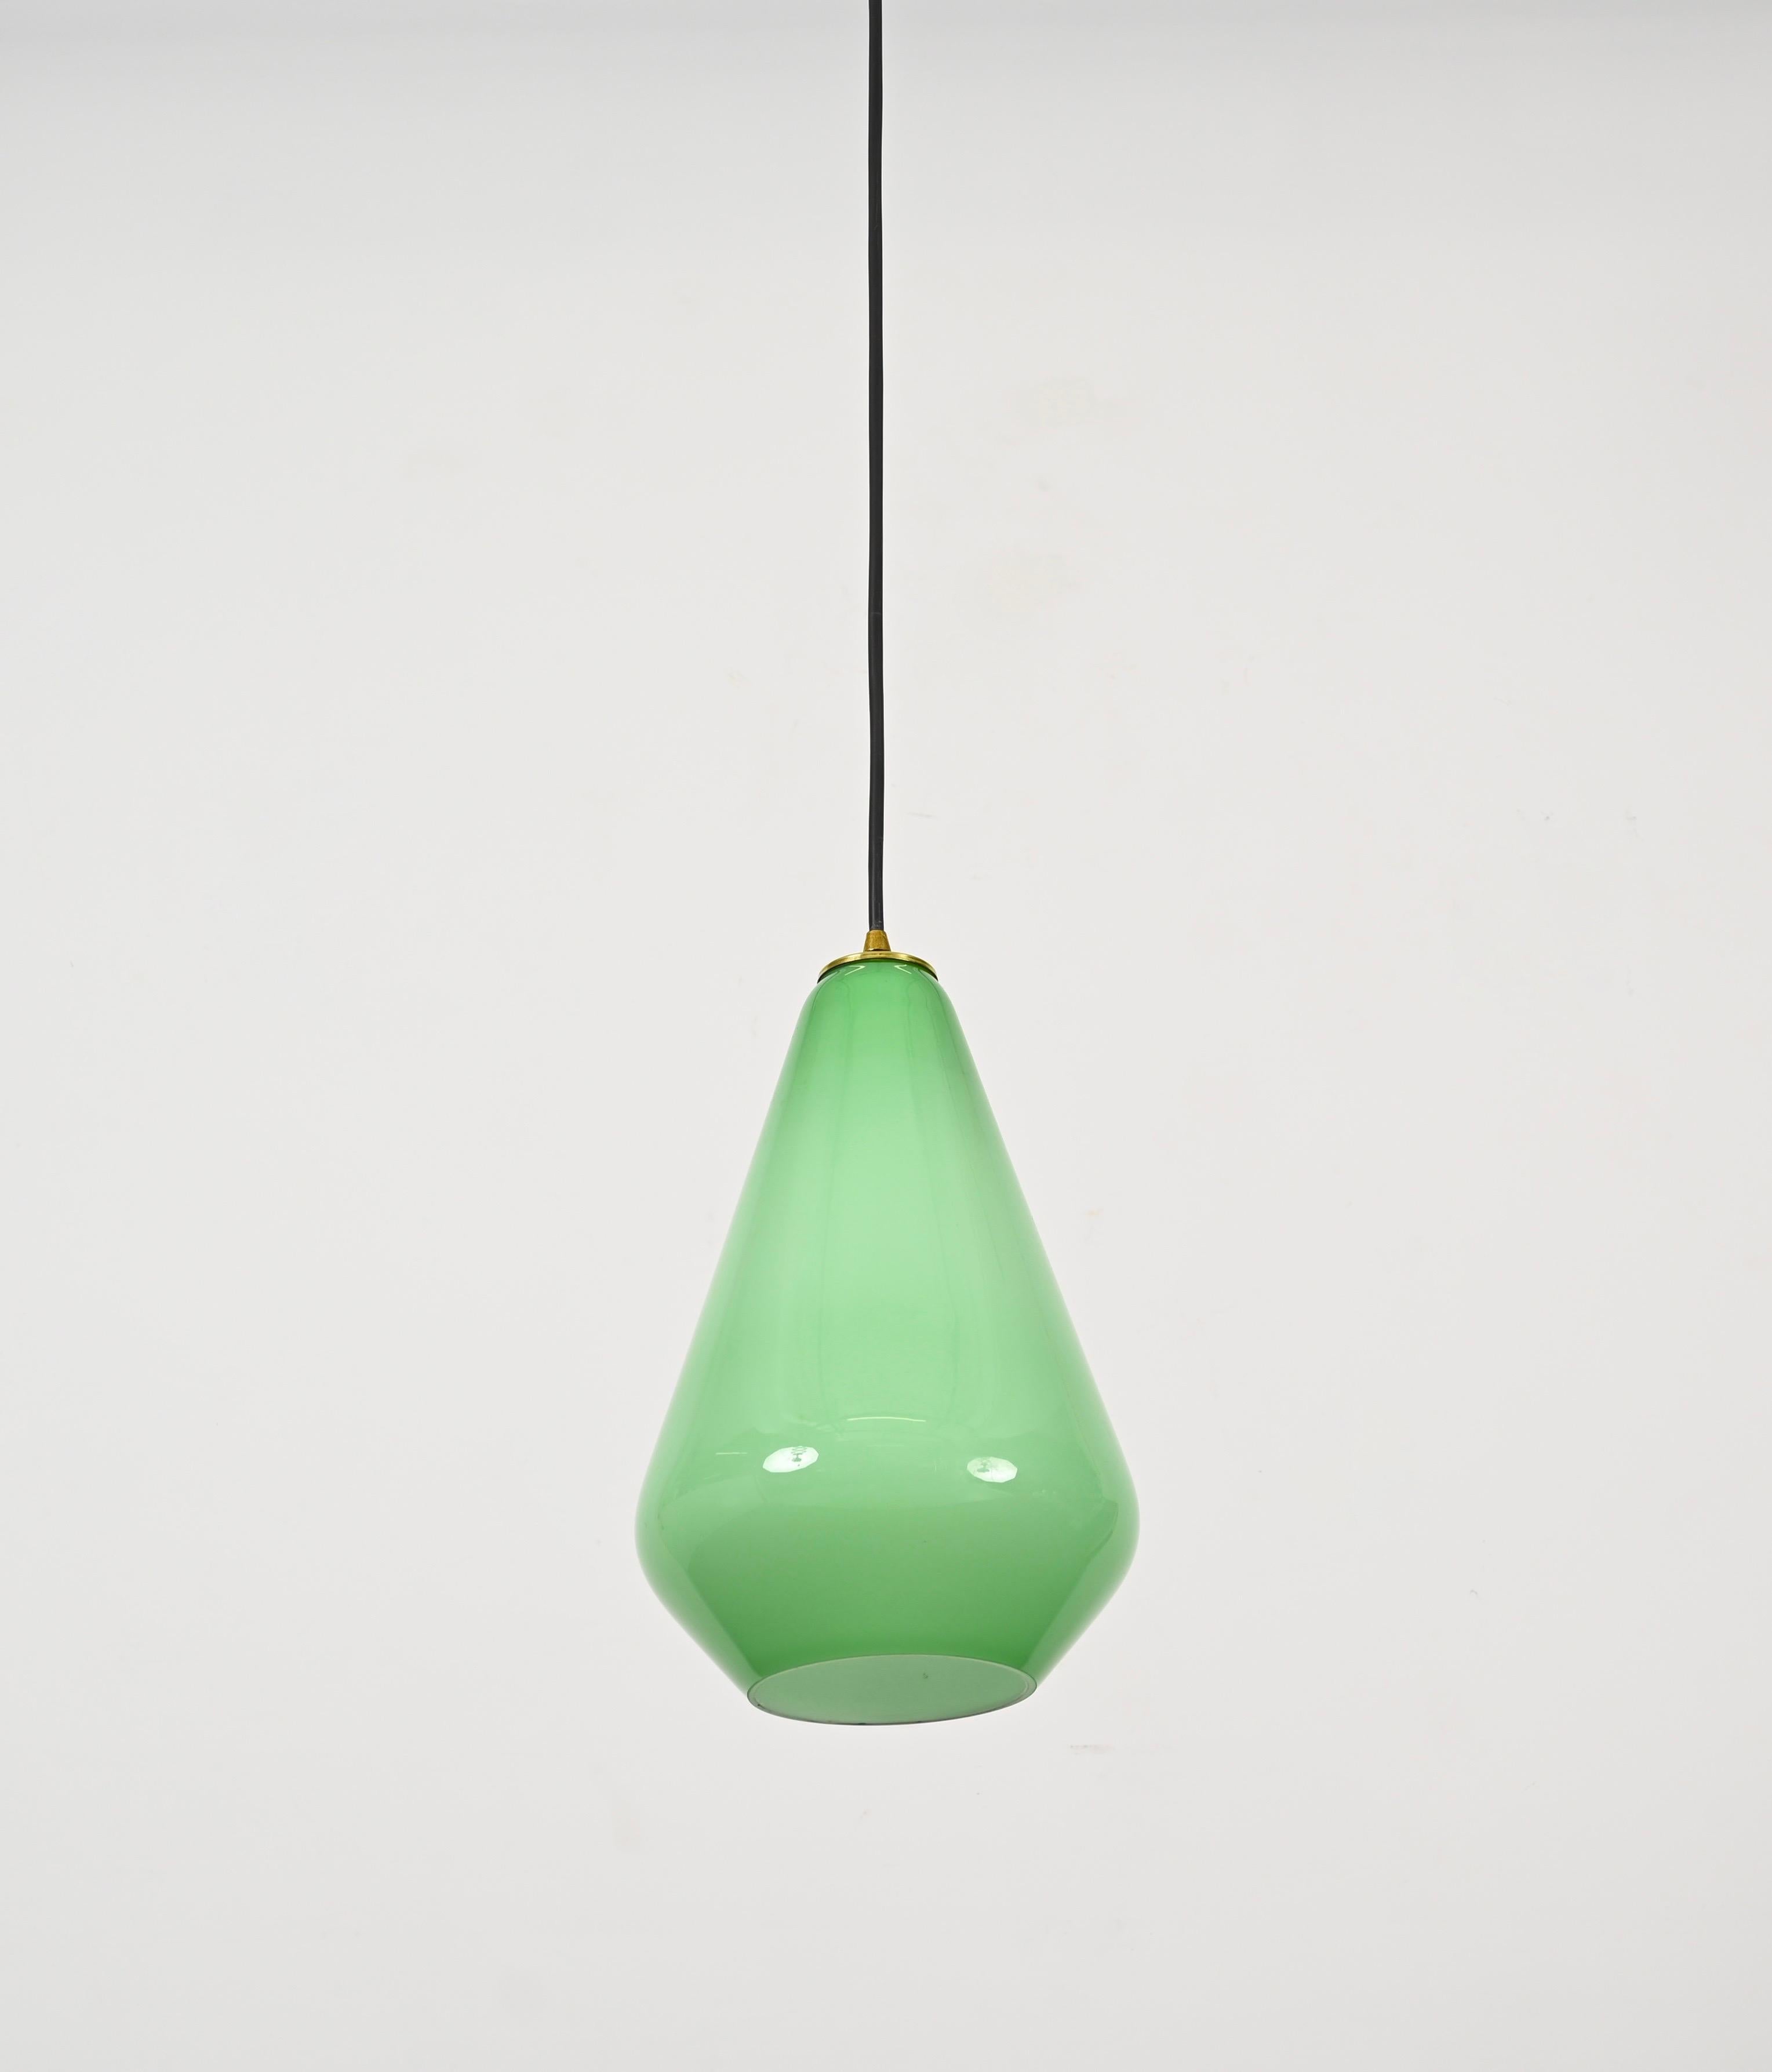 Wunderschöne italienische Murano-Hängeleuchte mit einem wunderschönen Lampenschirm aus geschichtetem grünem Glas. Dieses schöne Objekt wurde in den 1950er Jahren von Stilnovo in Italien entworfen.

Der Anhänger ist komplett original, in perfektem